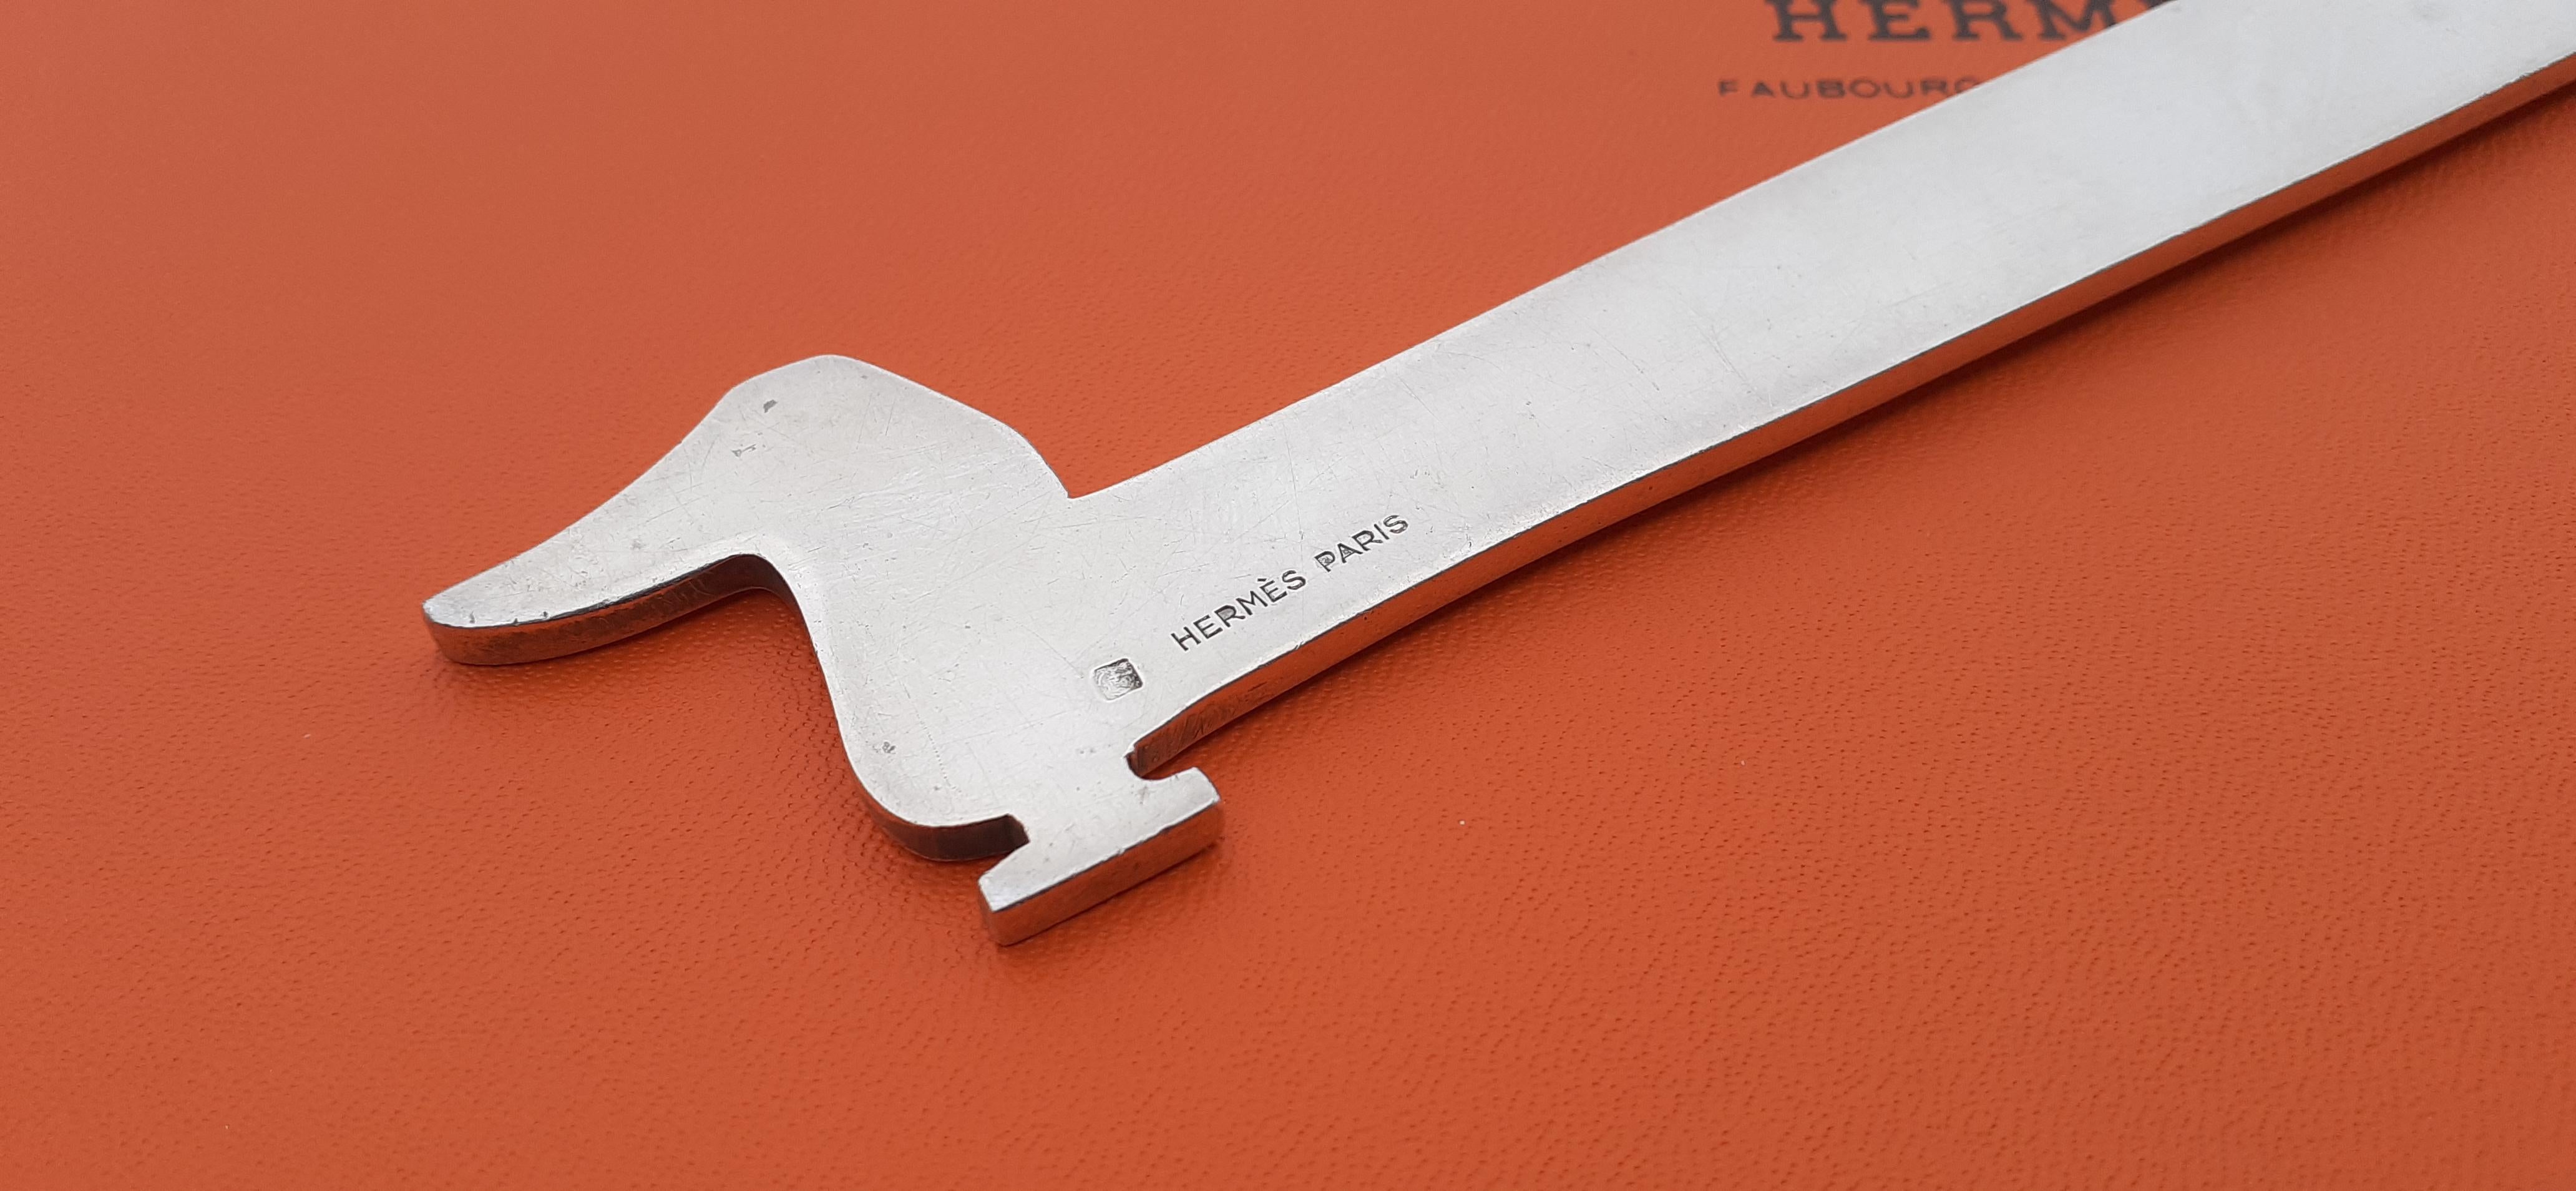 Hermès Vintage Teckel Dachshund Dog Shaped Letter Opener by Ravinet d'Enfert  For Sale 7